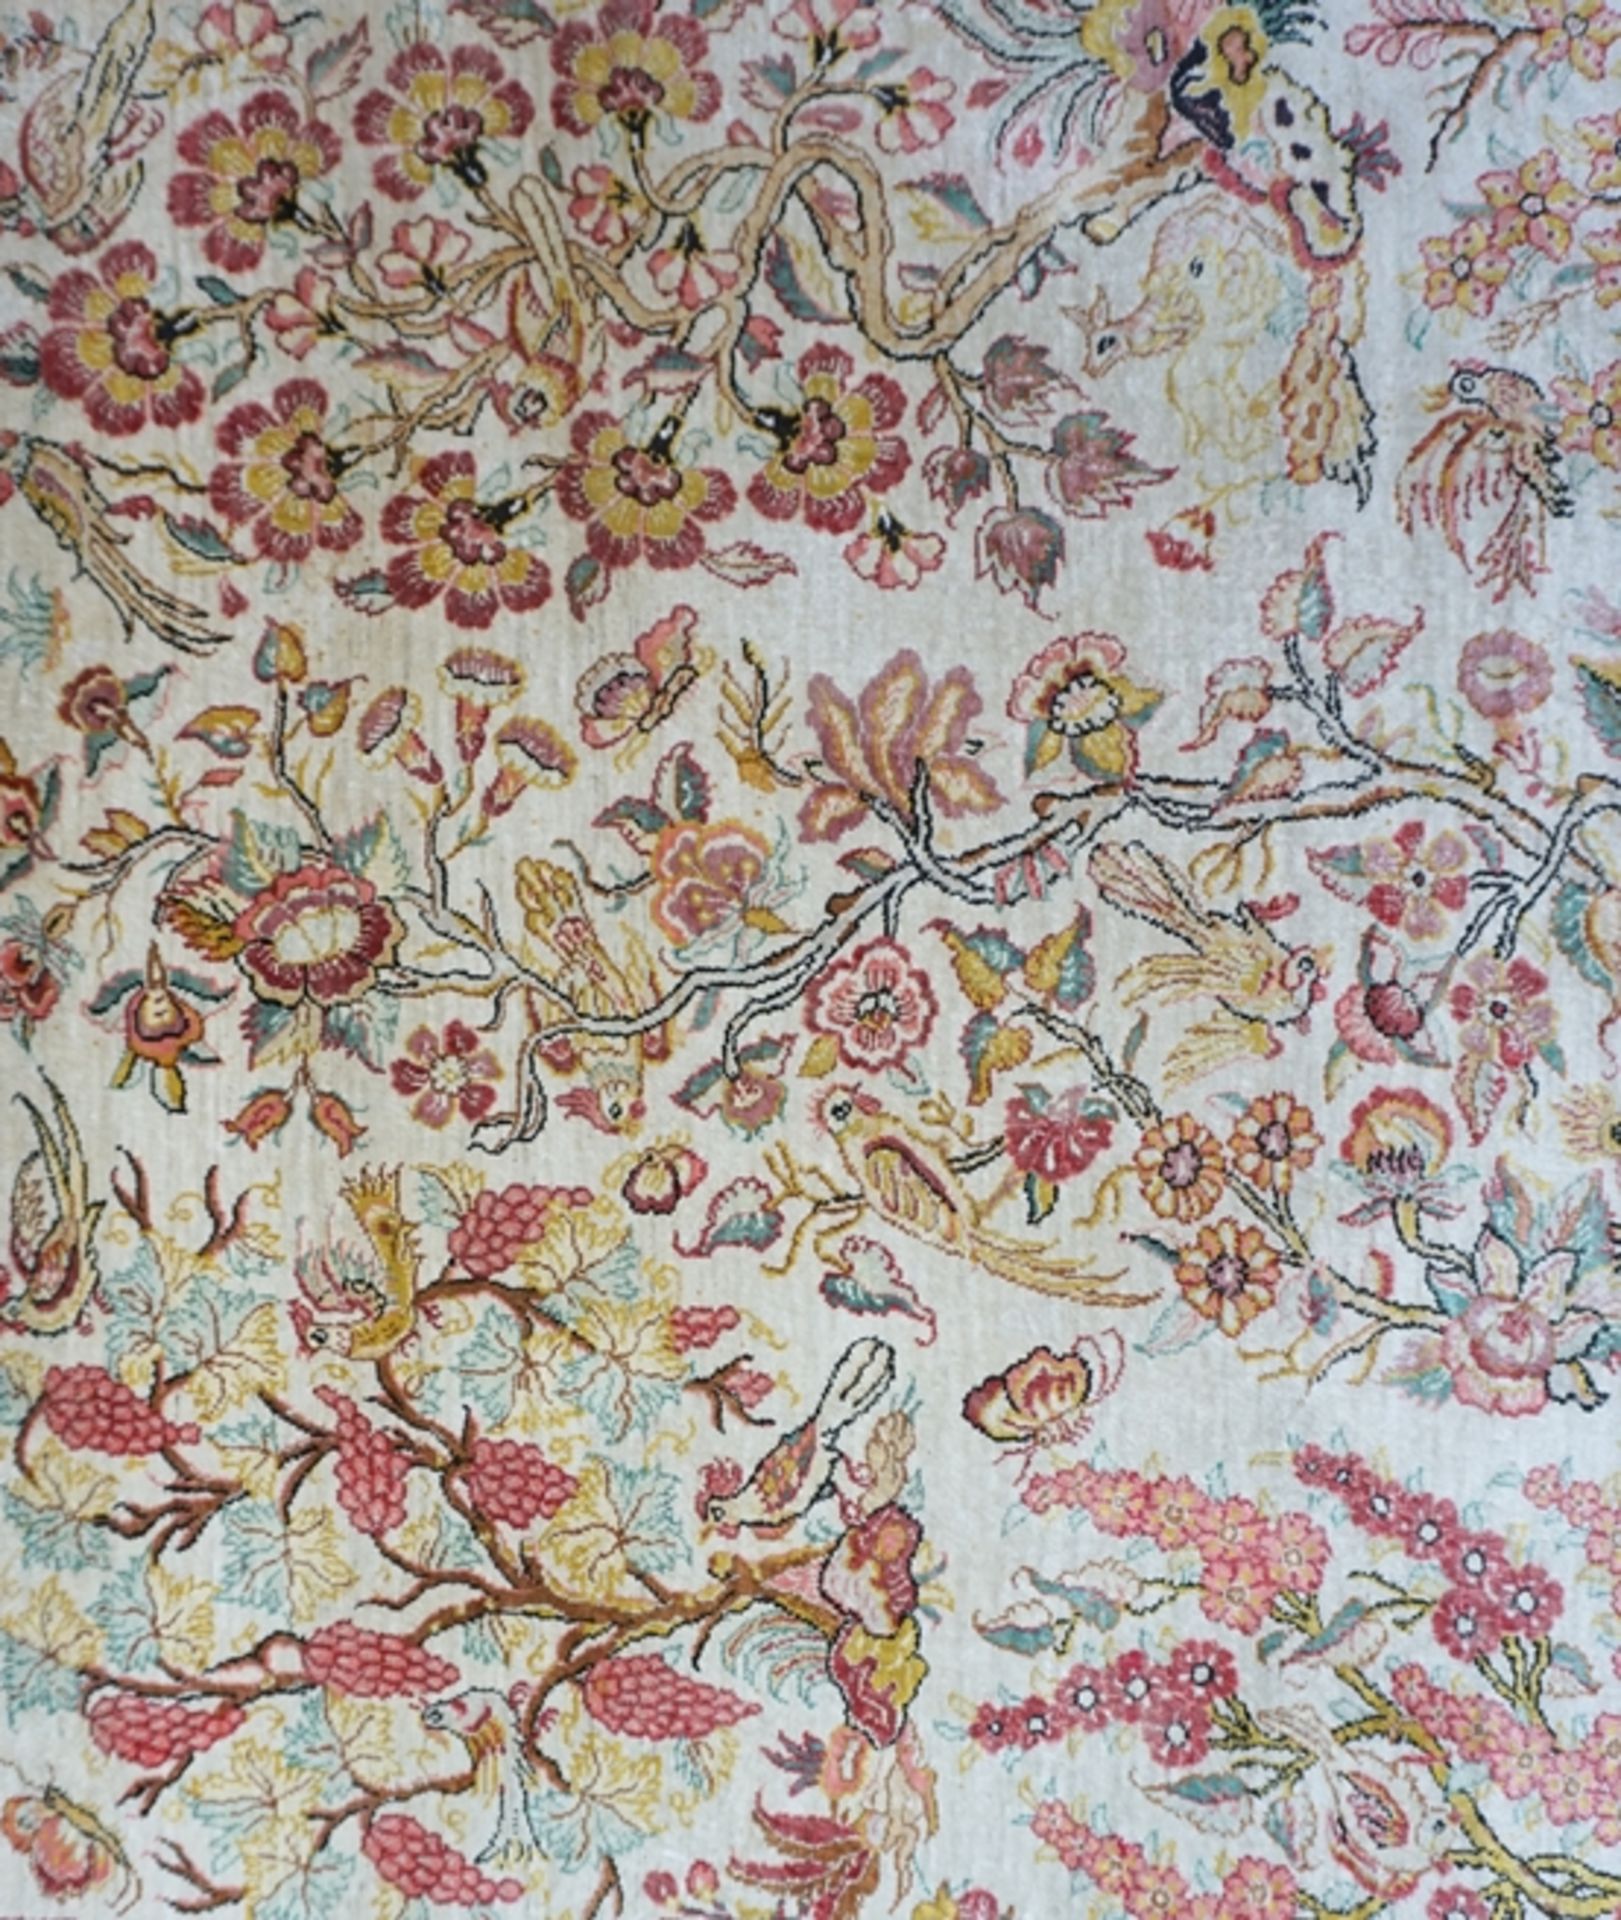 Teppich mit floralem Dekor und Tieren, rosé, Hereke, Seide, signiert - Bild 2 aus 4